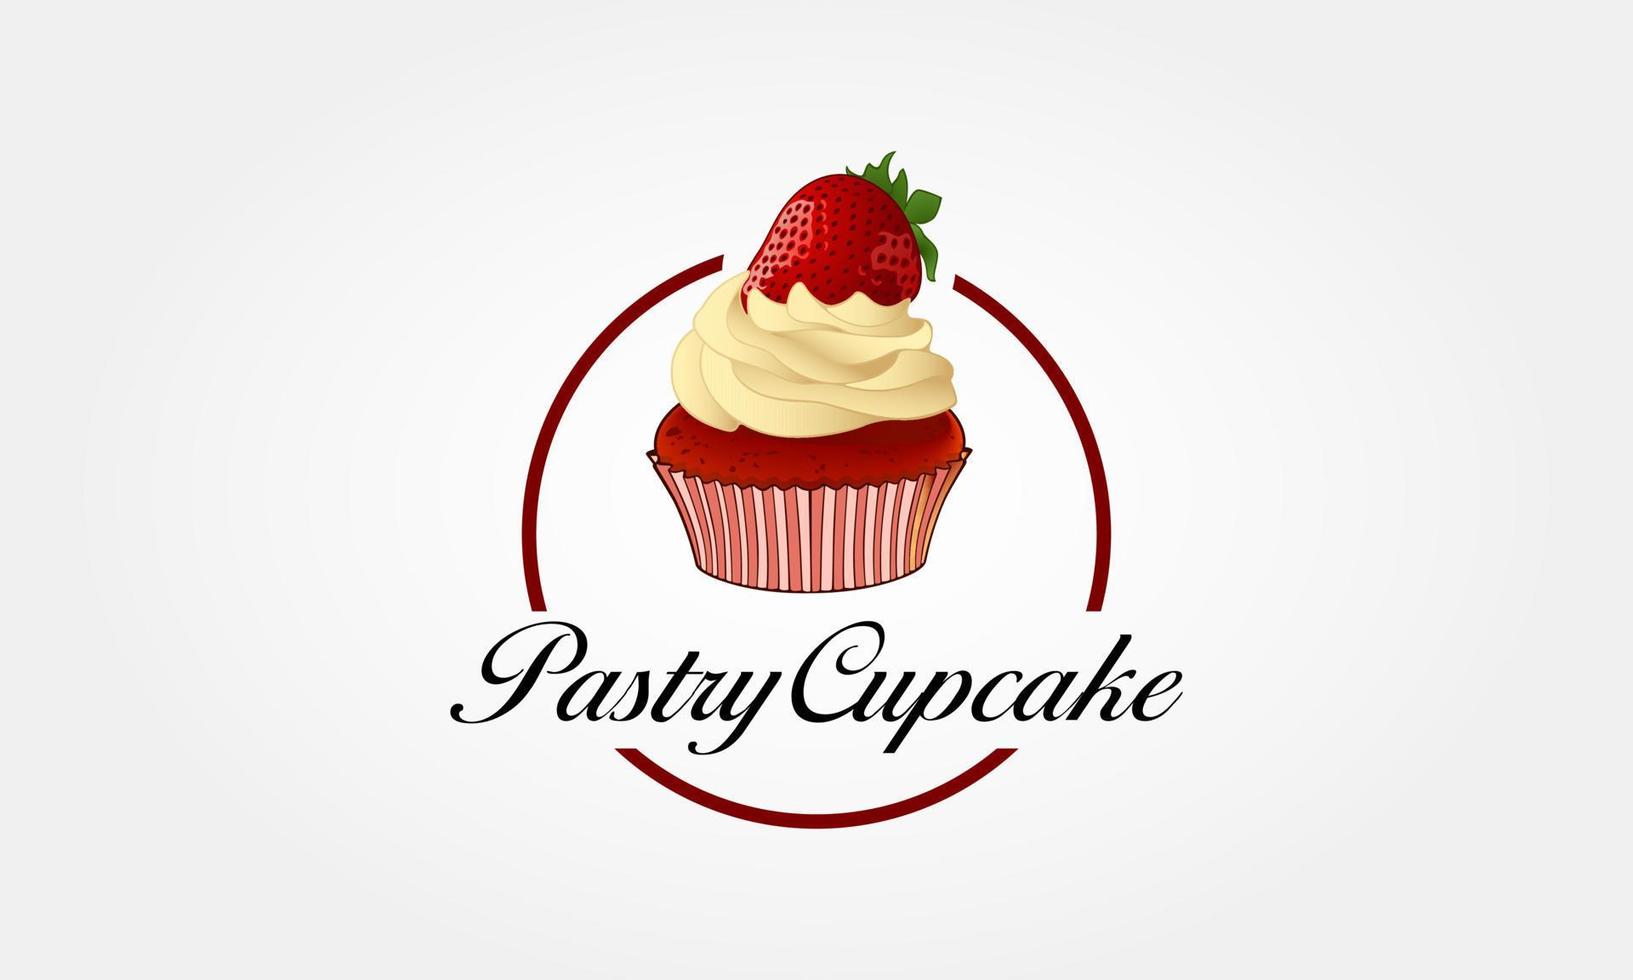 pastelería cupcake vector logo ilustración. plantilla de logotipo con estilo de panadería cupcake. este letrero es un lindo letrero que consta de icono de cupcake, elementos de diseño decorativo.